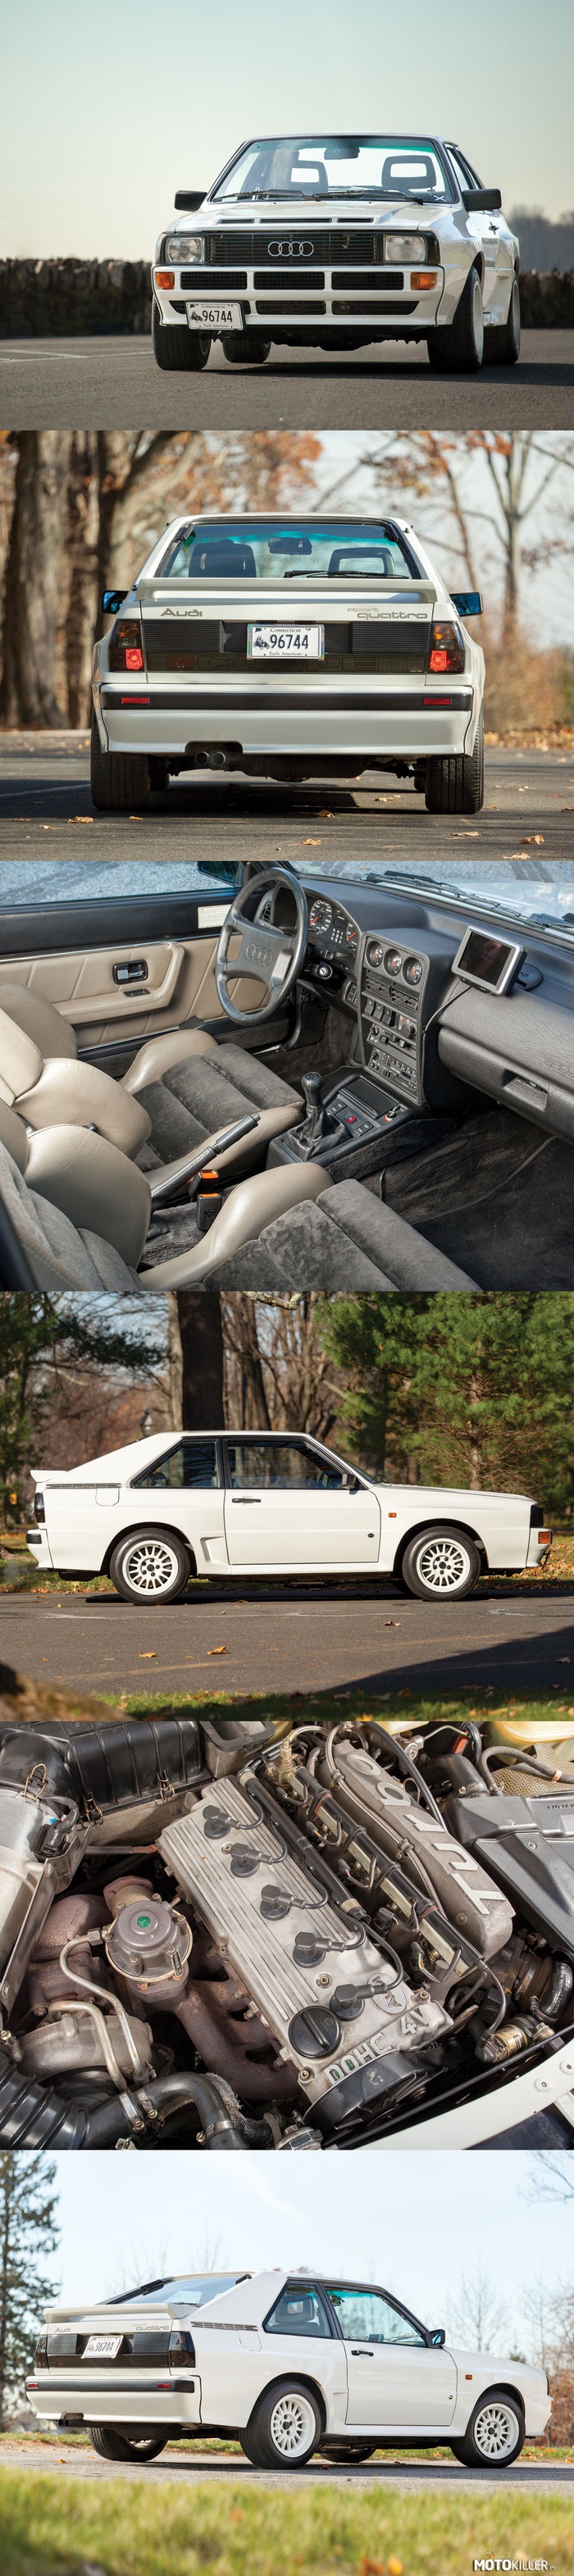 Audi Sport Quattro 1984 – Szokuje swoim stylem, mocą, rajdową sprawnością i ceną. Unikatowe Audi Sport Quattro powstało w celu uzyskania homologacji dla B-grupowego potwora. Bazą było skrócone podwozie modelu Quattro, a sercem napędzający stale 4 koła 5-cylindrowy silnik 2,l turbo o mocy 320 KM. Powstało ich zaledwie 214, z czego za cenę dwukrotnie wyższą od ówczesnego Porsche 911 Turbo w ręce prywatne przeszło 170 egzemplarzy. Licytowane Audi Sport Quattro jest jednym z najlepiej zachowanych, ma przebieg zaledwie 8300 km. Oczekiwana cena– 1,2-1,6 mln złotych. 